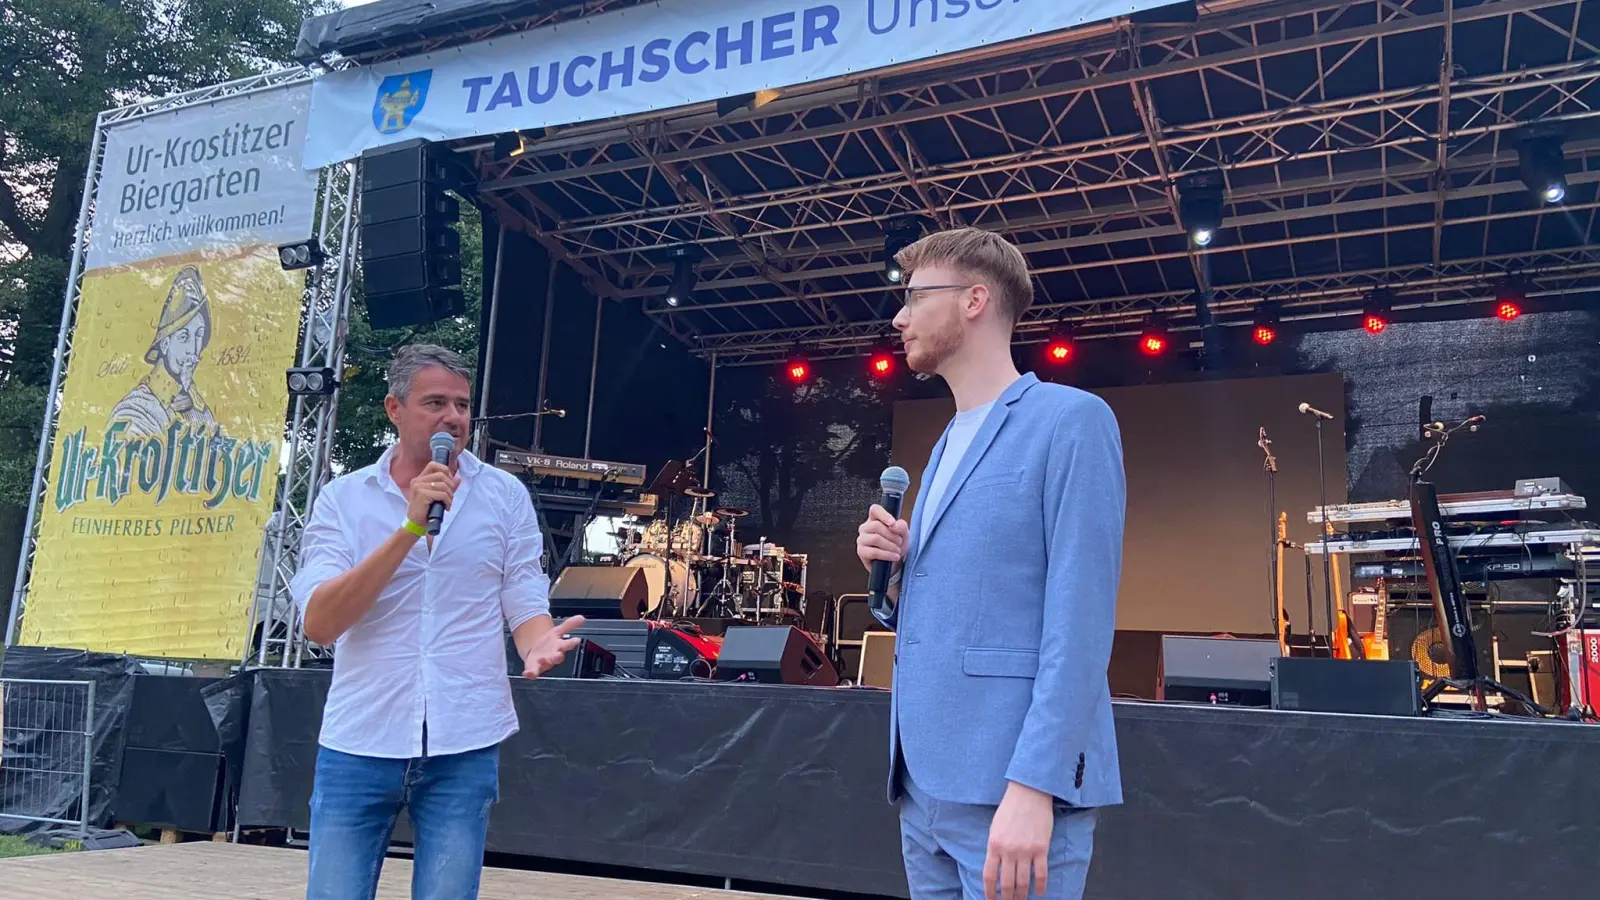 „Unser Tauchscher”: Jonas Juckeland plant neuen Film über Taucha (Foto: taucha-kompakt.de)